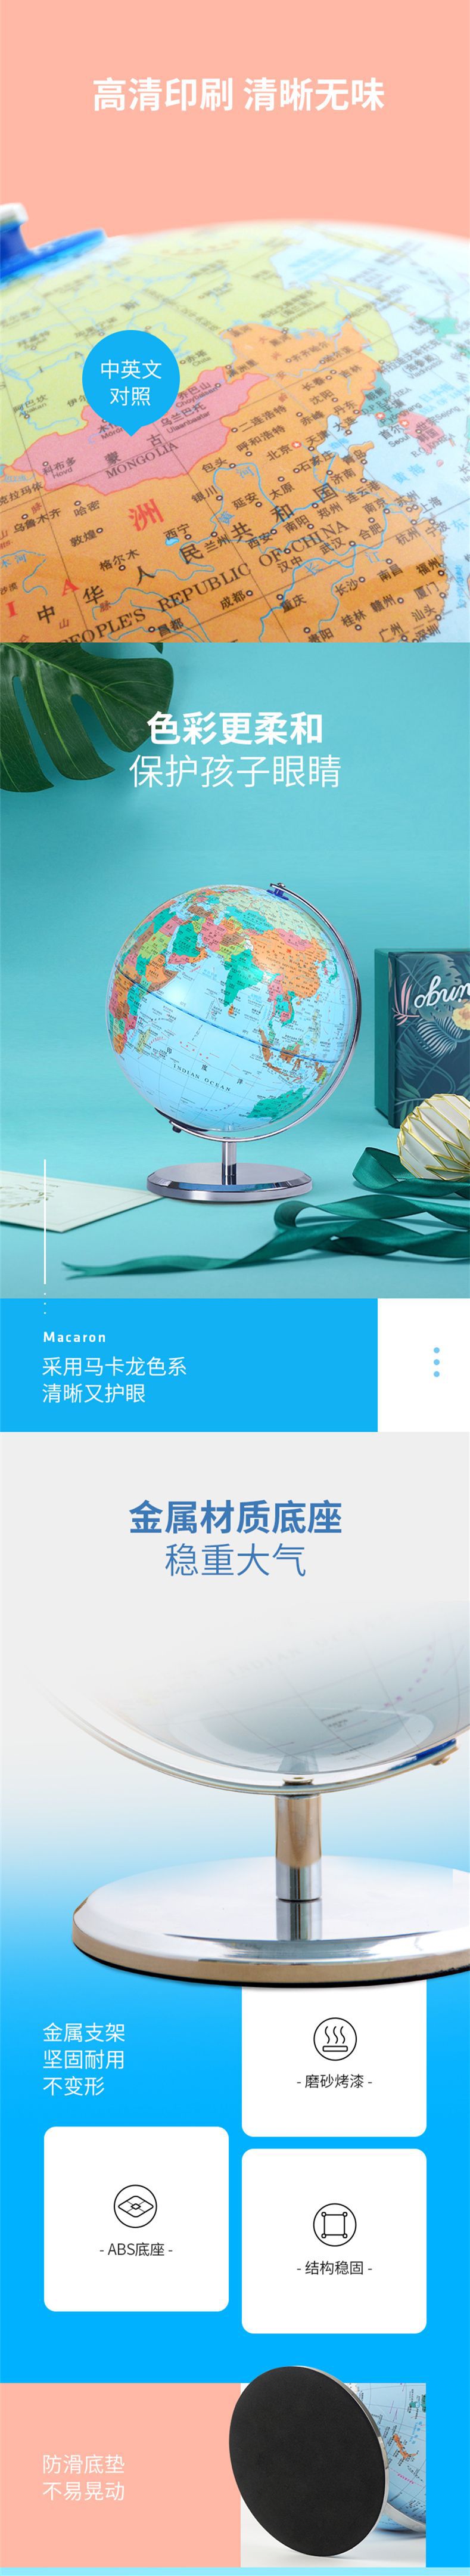 米乐|米乐·M6(China)官方网站_image7112